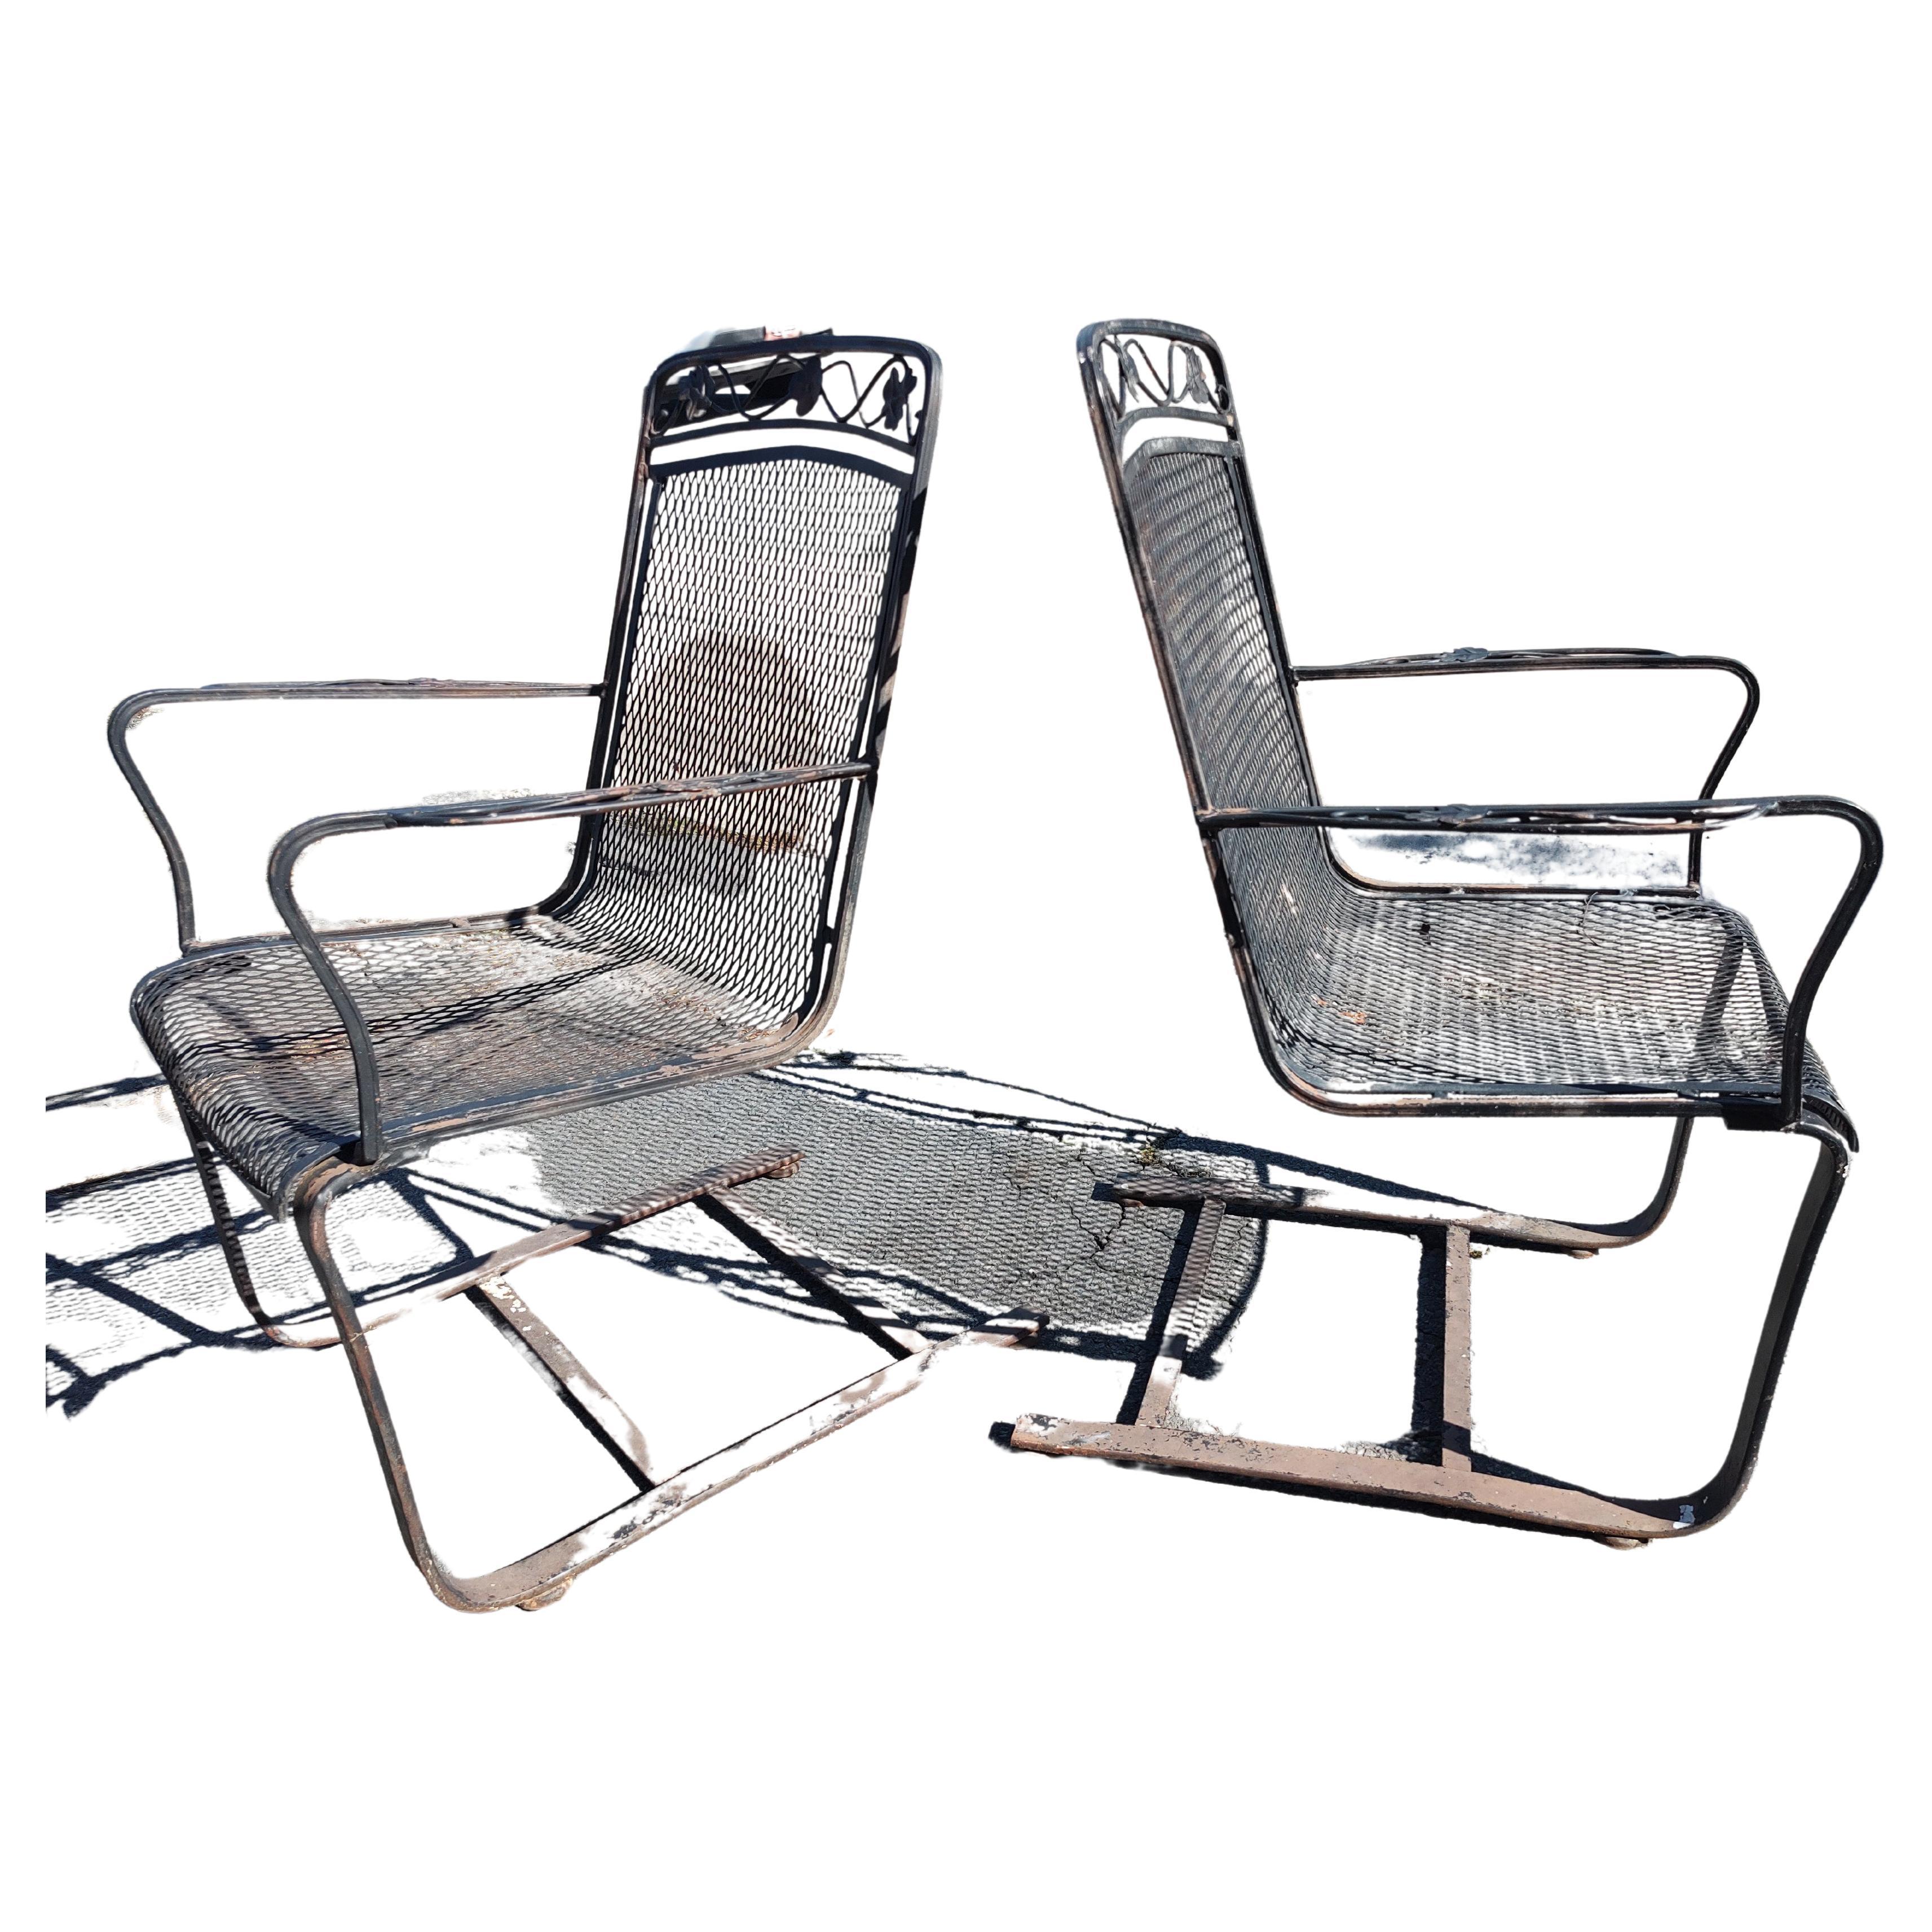 Fantastique paire de chaises de salon en fer sculpté, en porte-à-faux, de style moderne du milieu du siècle, peintes en noir, vers 1960. Ils sont très confortables car ils ont une mobilité semblable à celle d'un ressort, étant donné qu'ils sont en